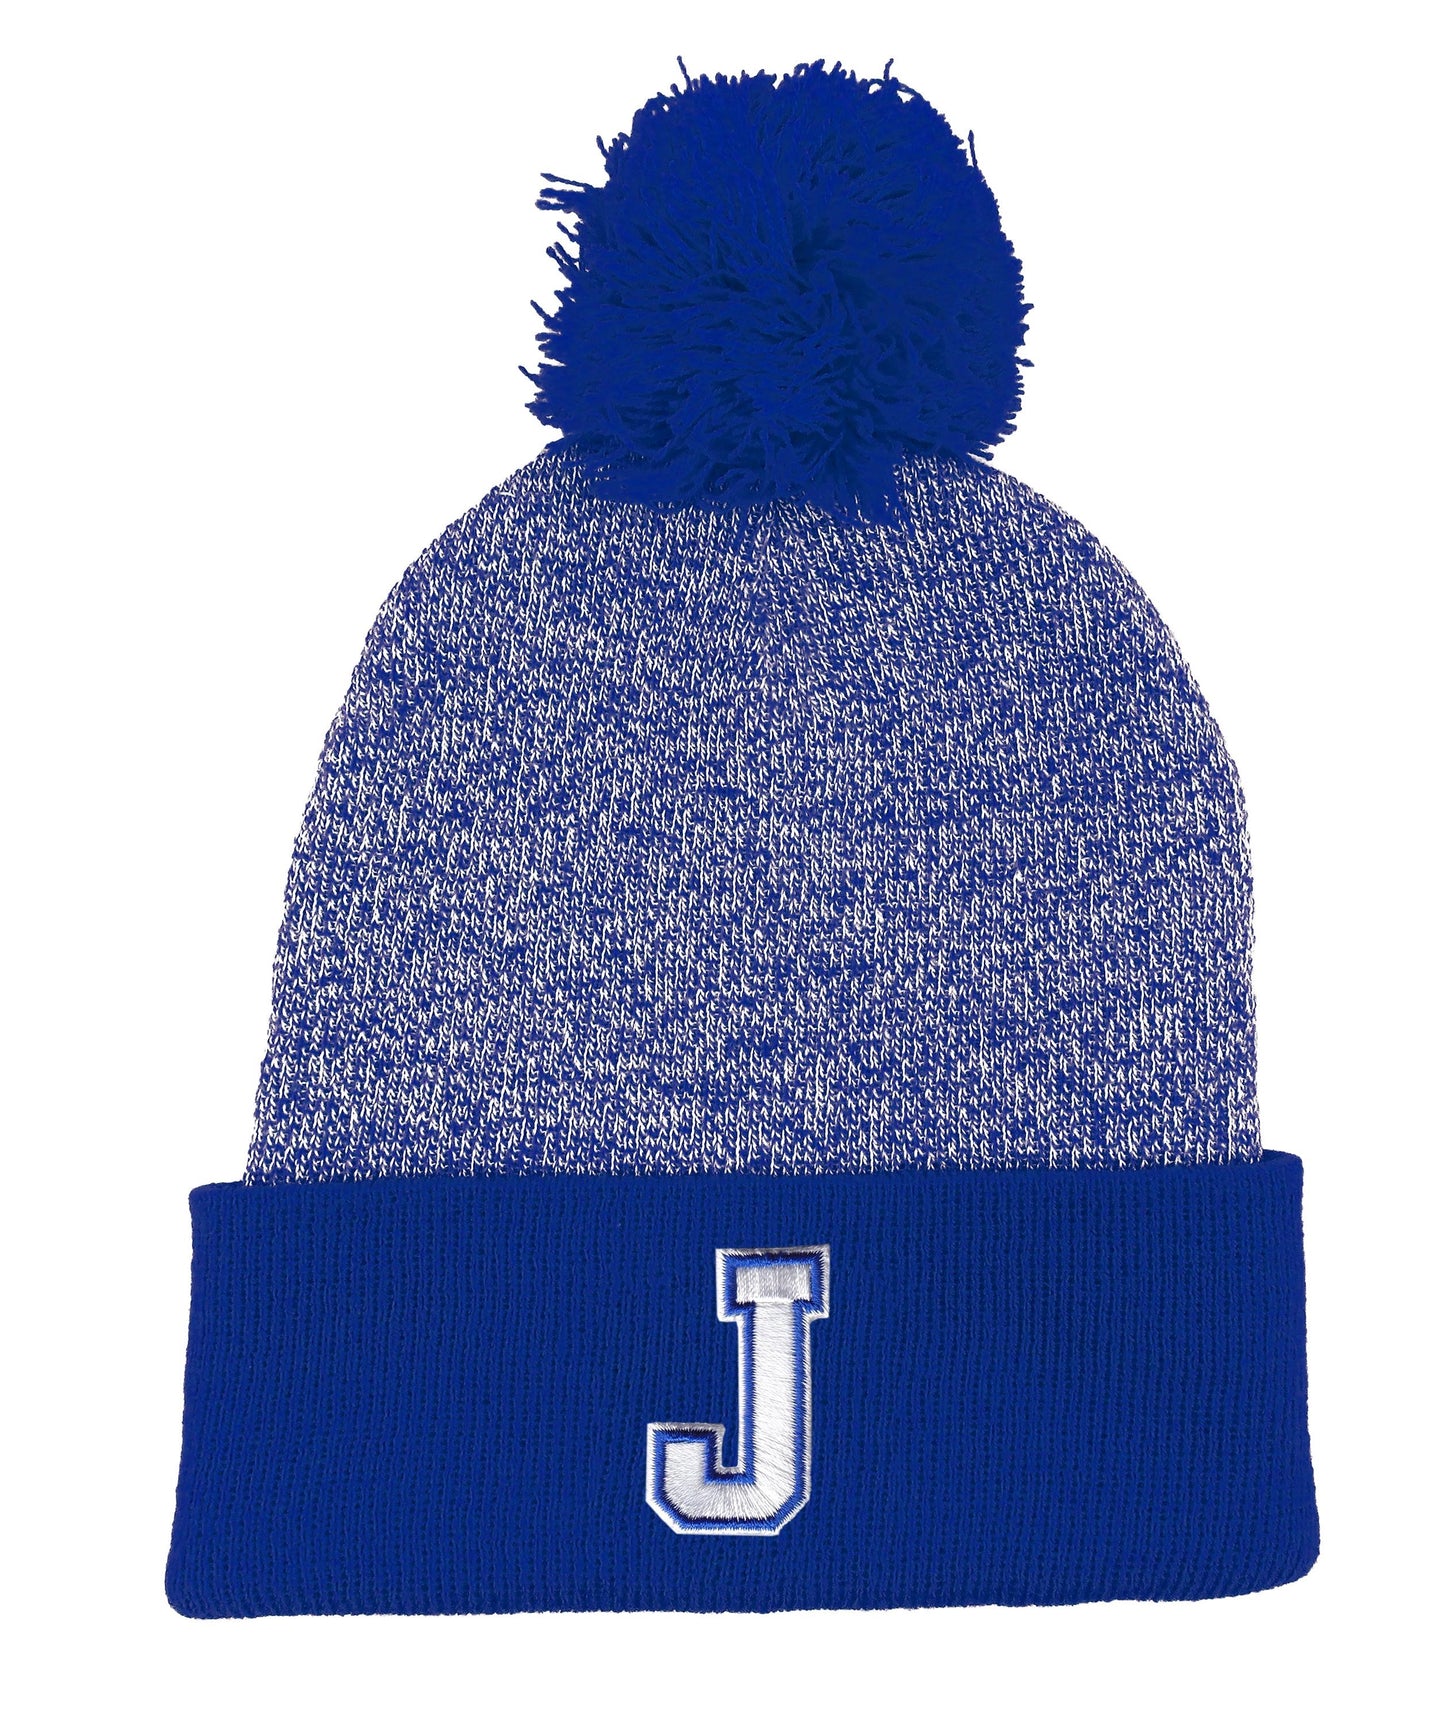 Logo Fit.  100% Acrylic.  Hand wash & dry flat.  Marled yarn body w/solid royal blue cuff and pom hat.  One Size Fits Most.  J logo.